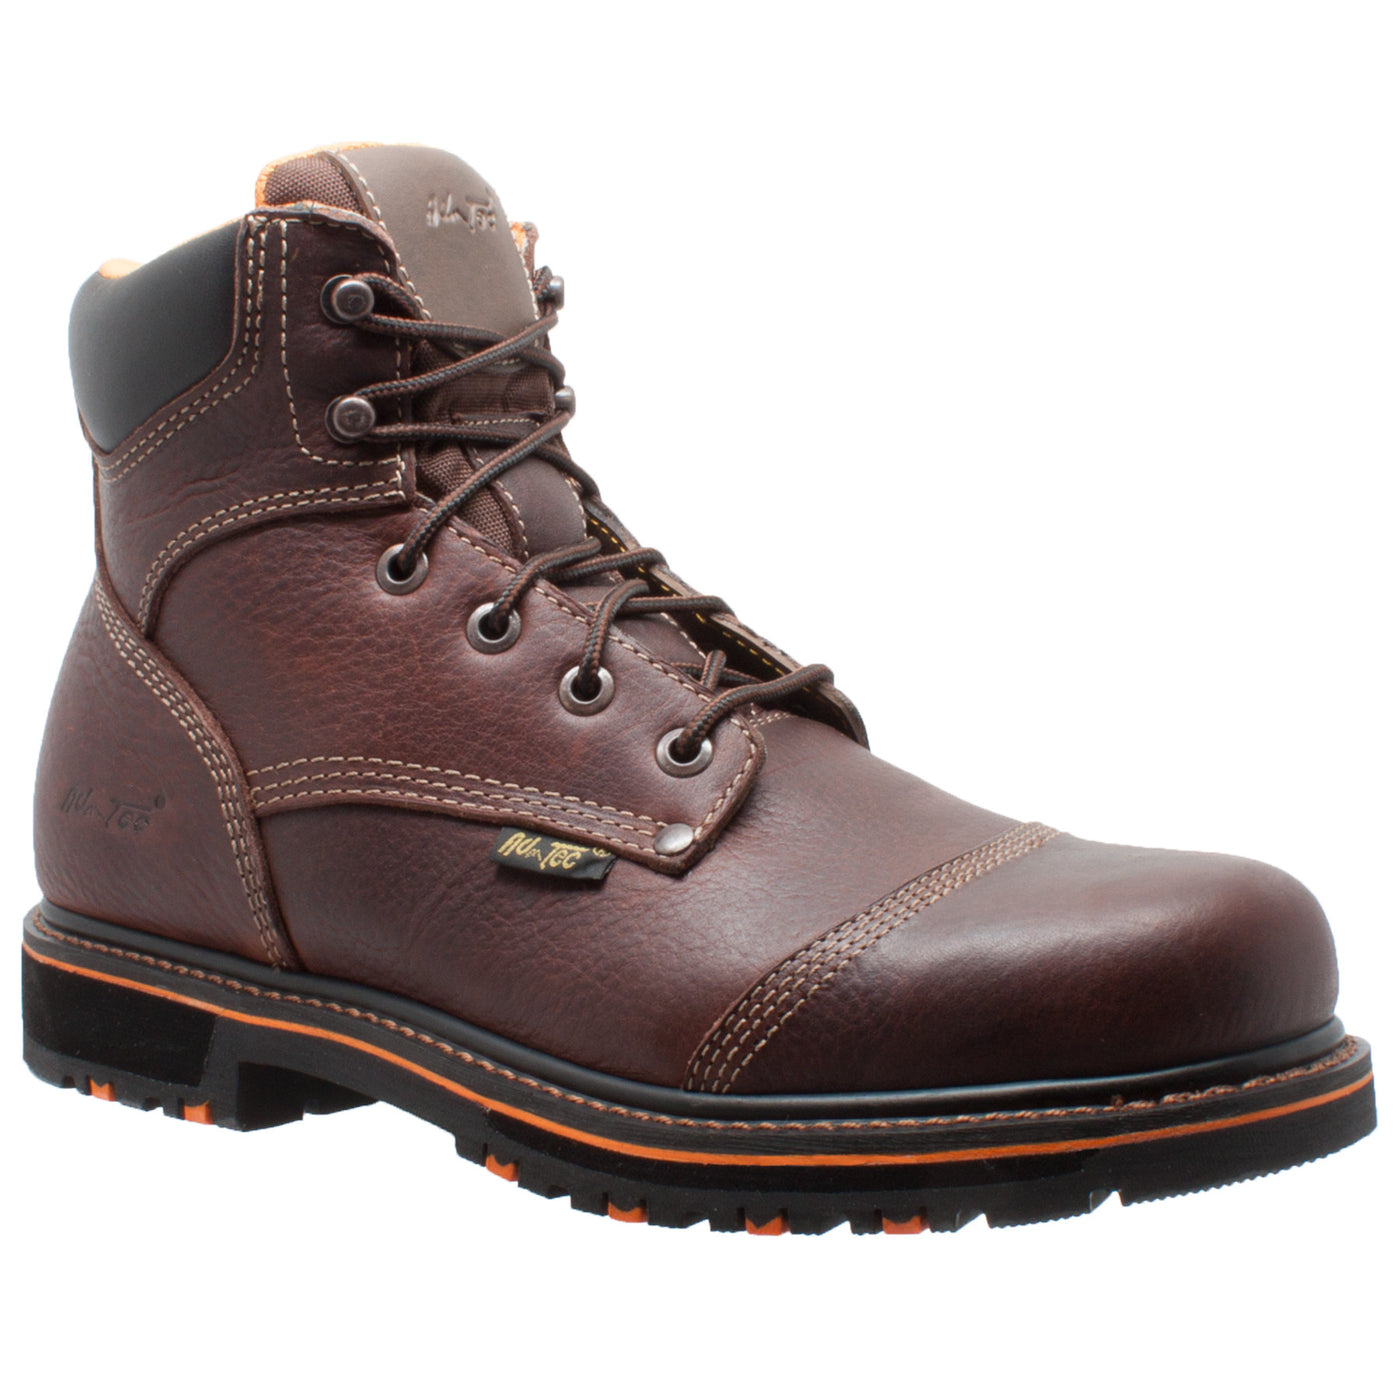 Men's 6" Comfort Work Boot Dark Brown - 9723 - Shop Genuine Leather men & women's boots online | AdTecFootWear